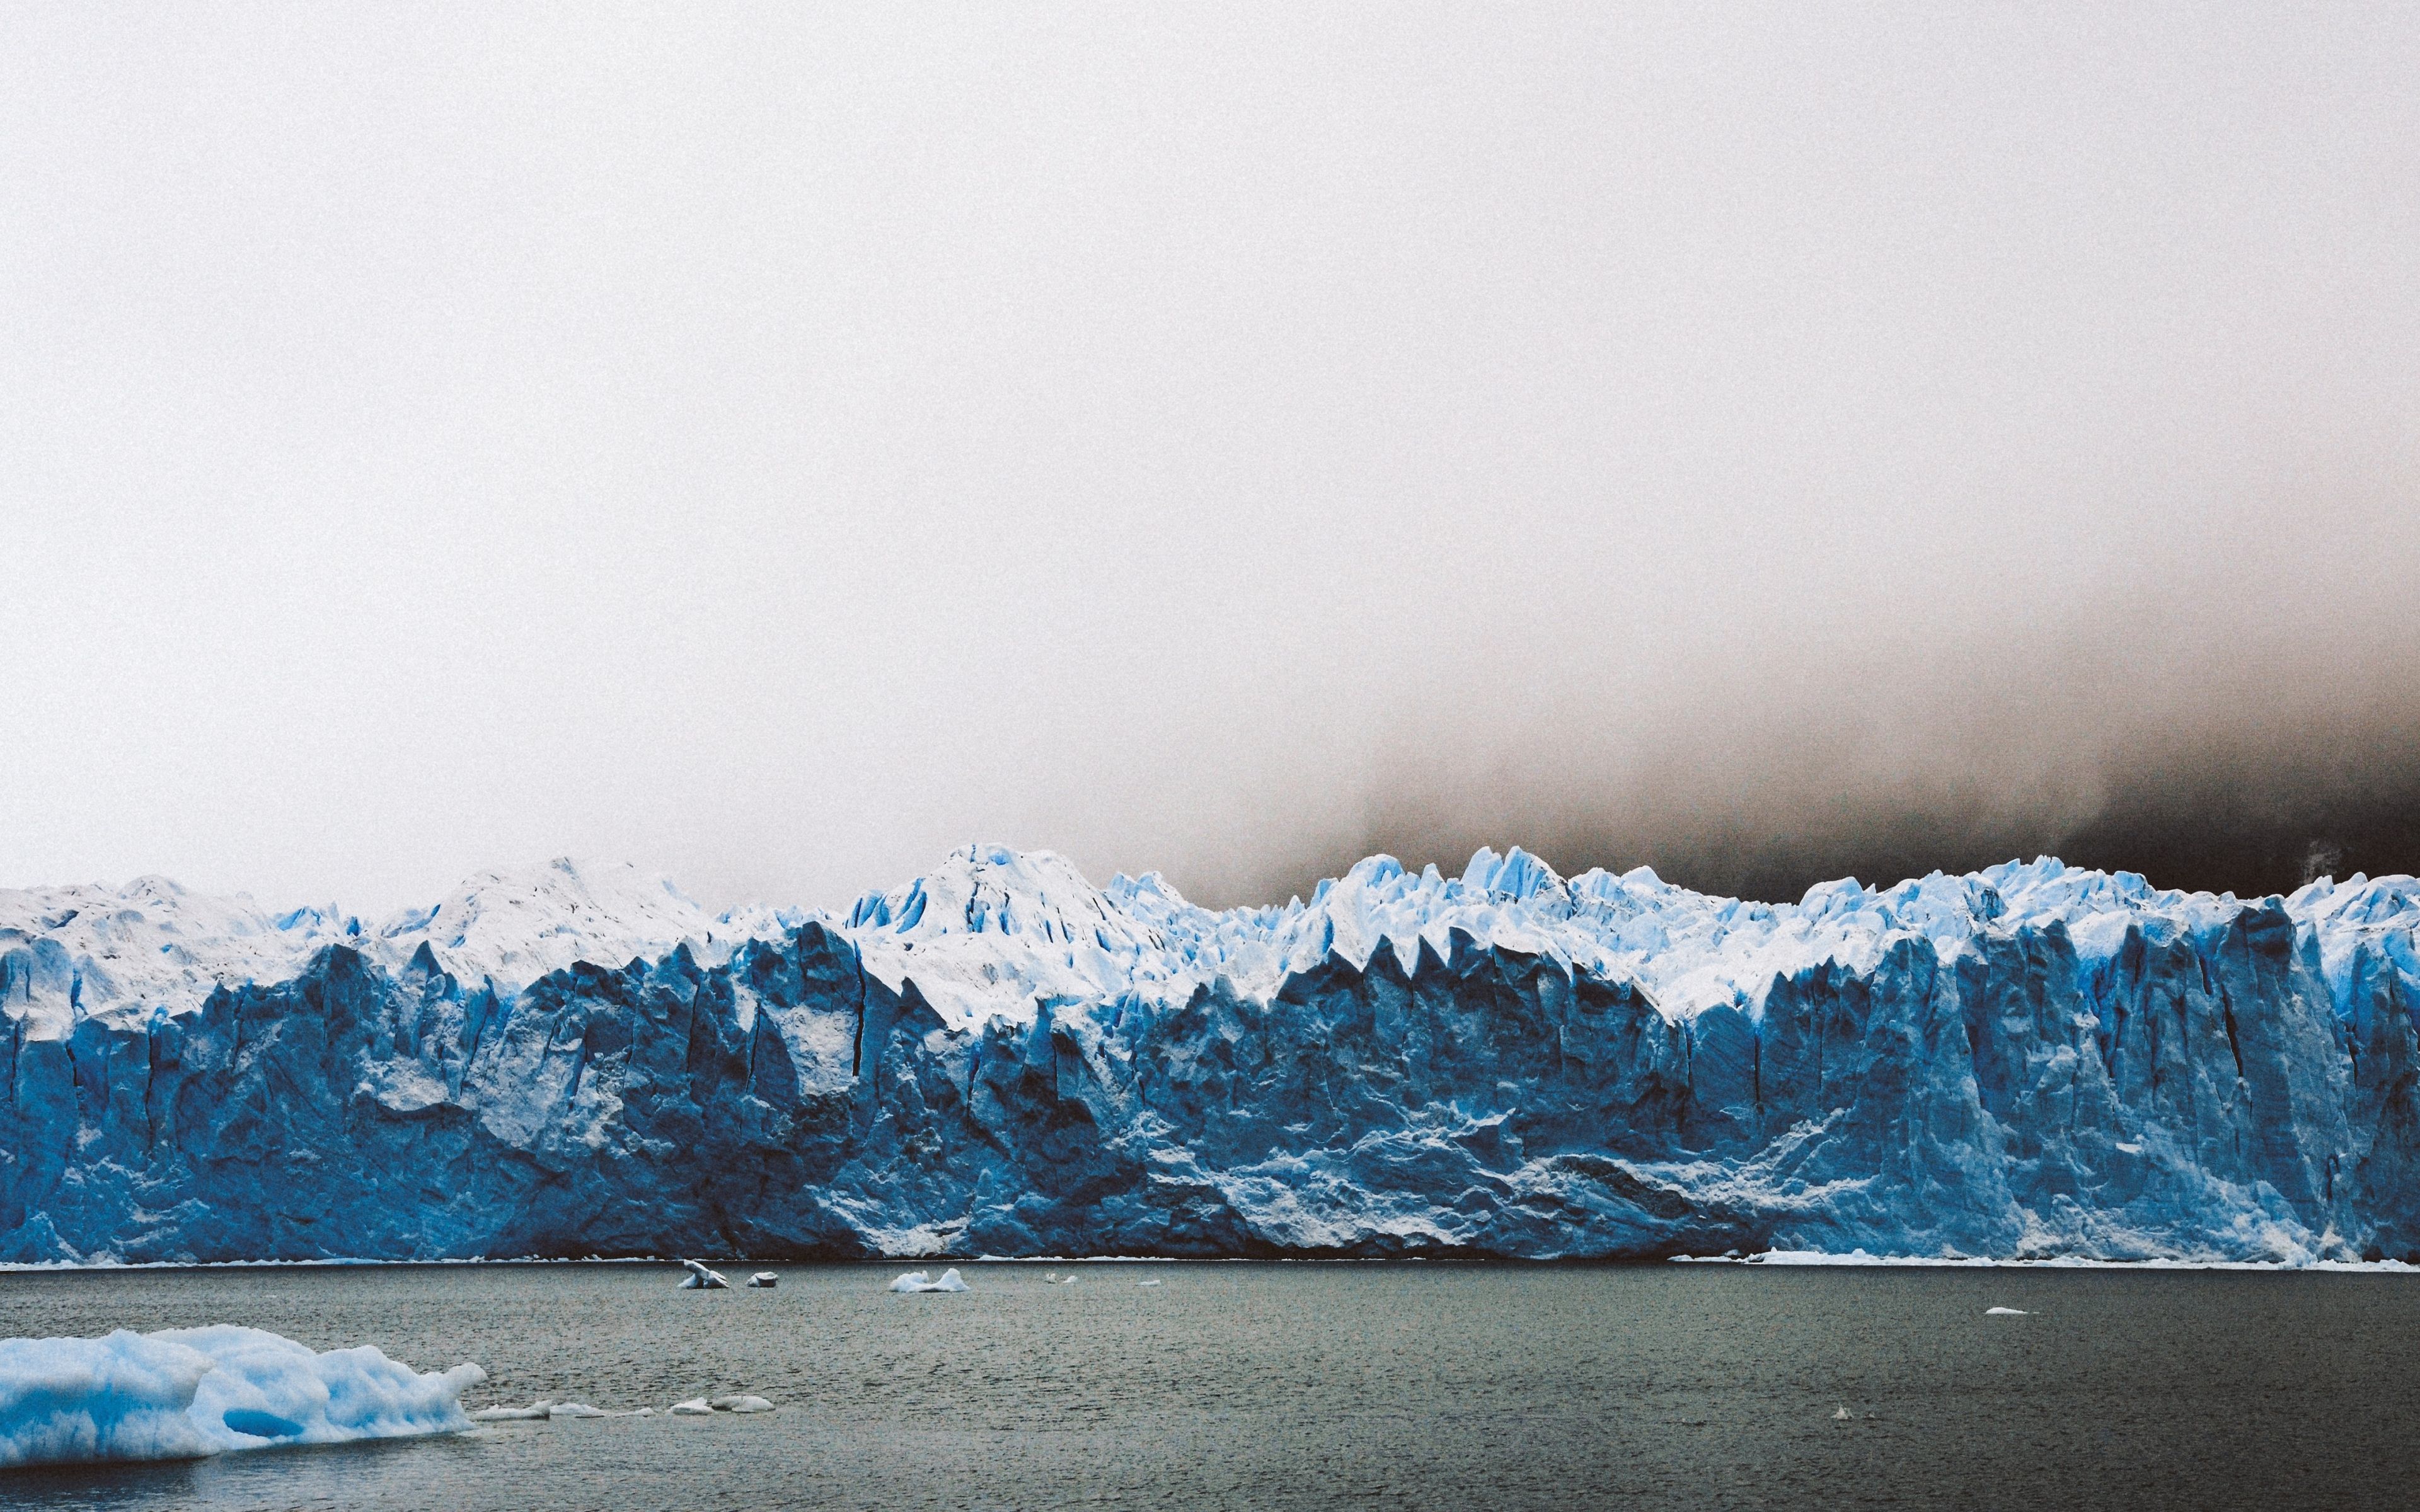 Download Wallpaper 3840x2400 Perito moreno glacier, Glacier, Los